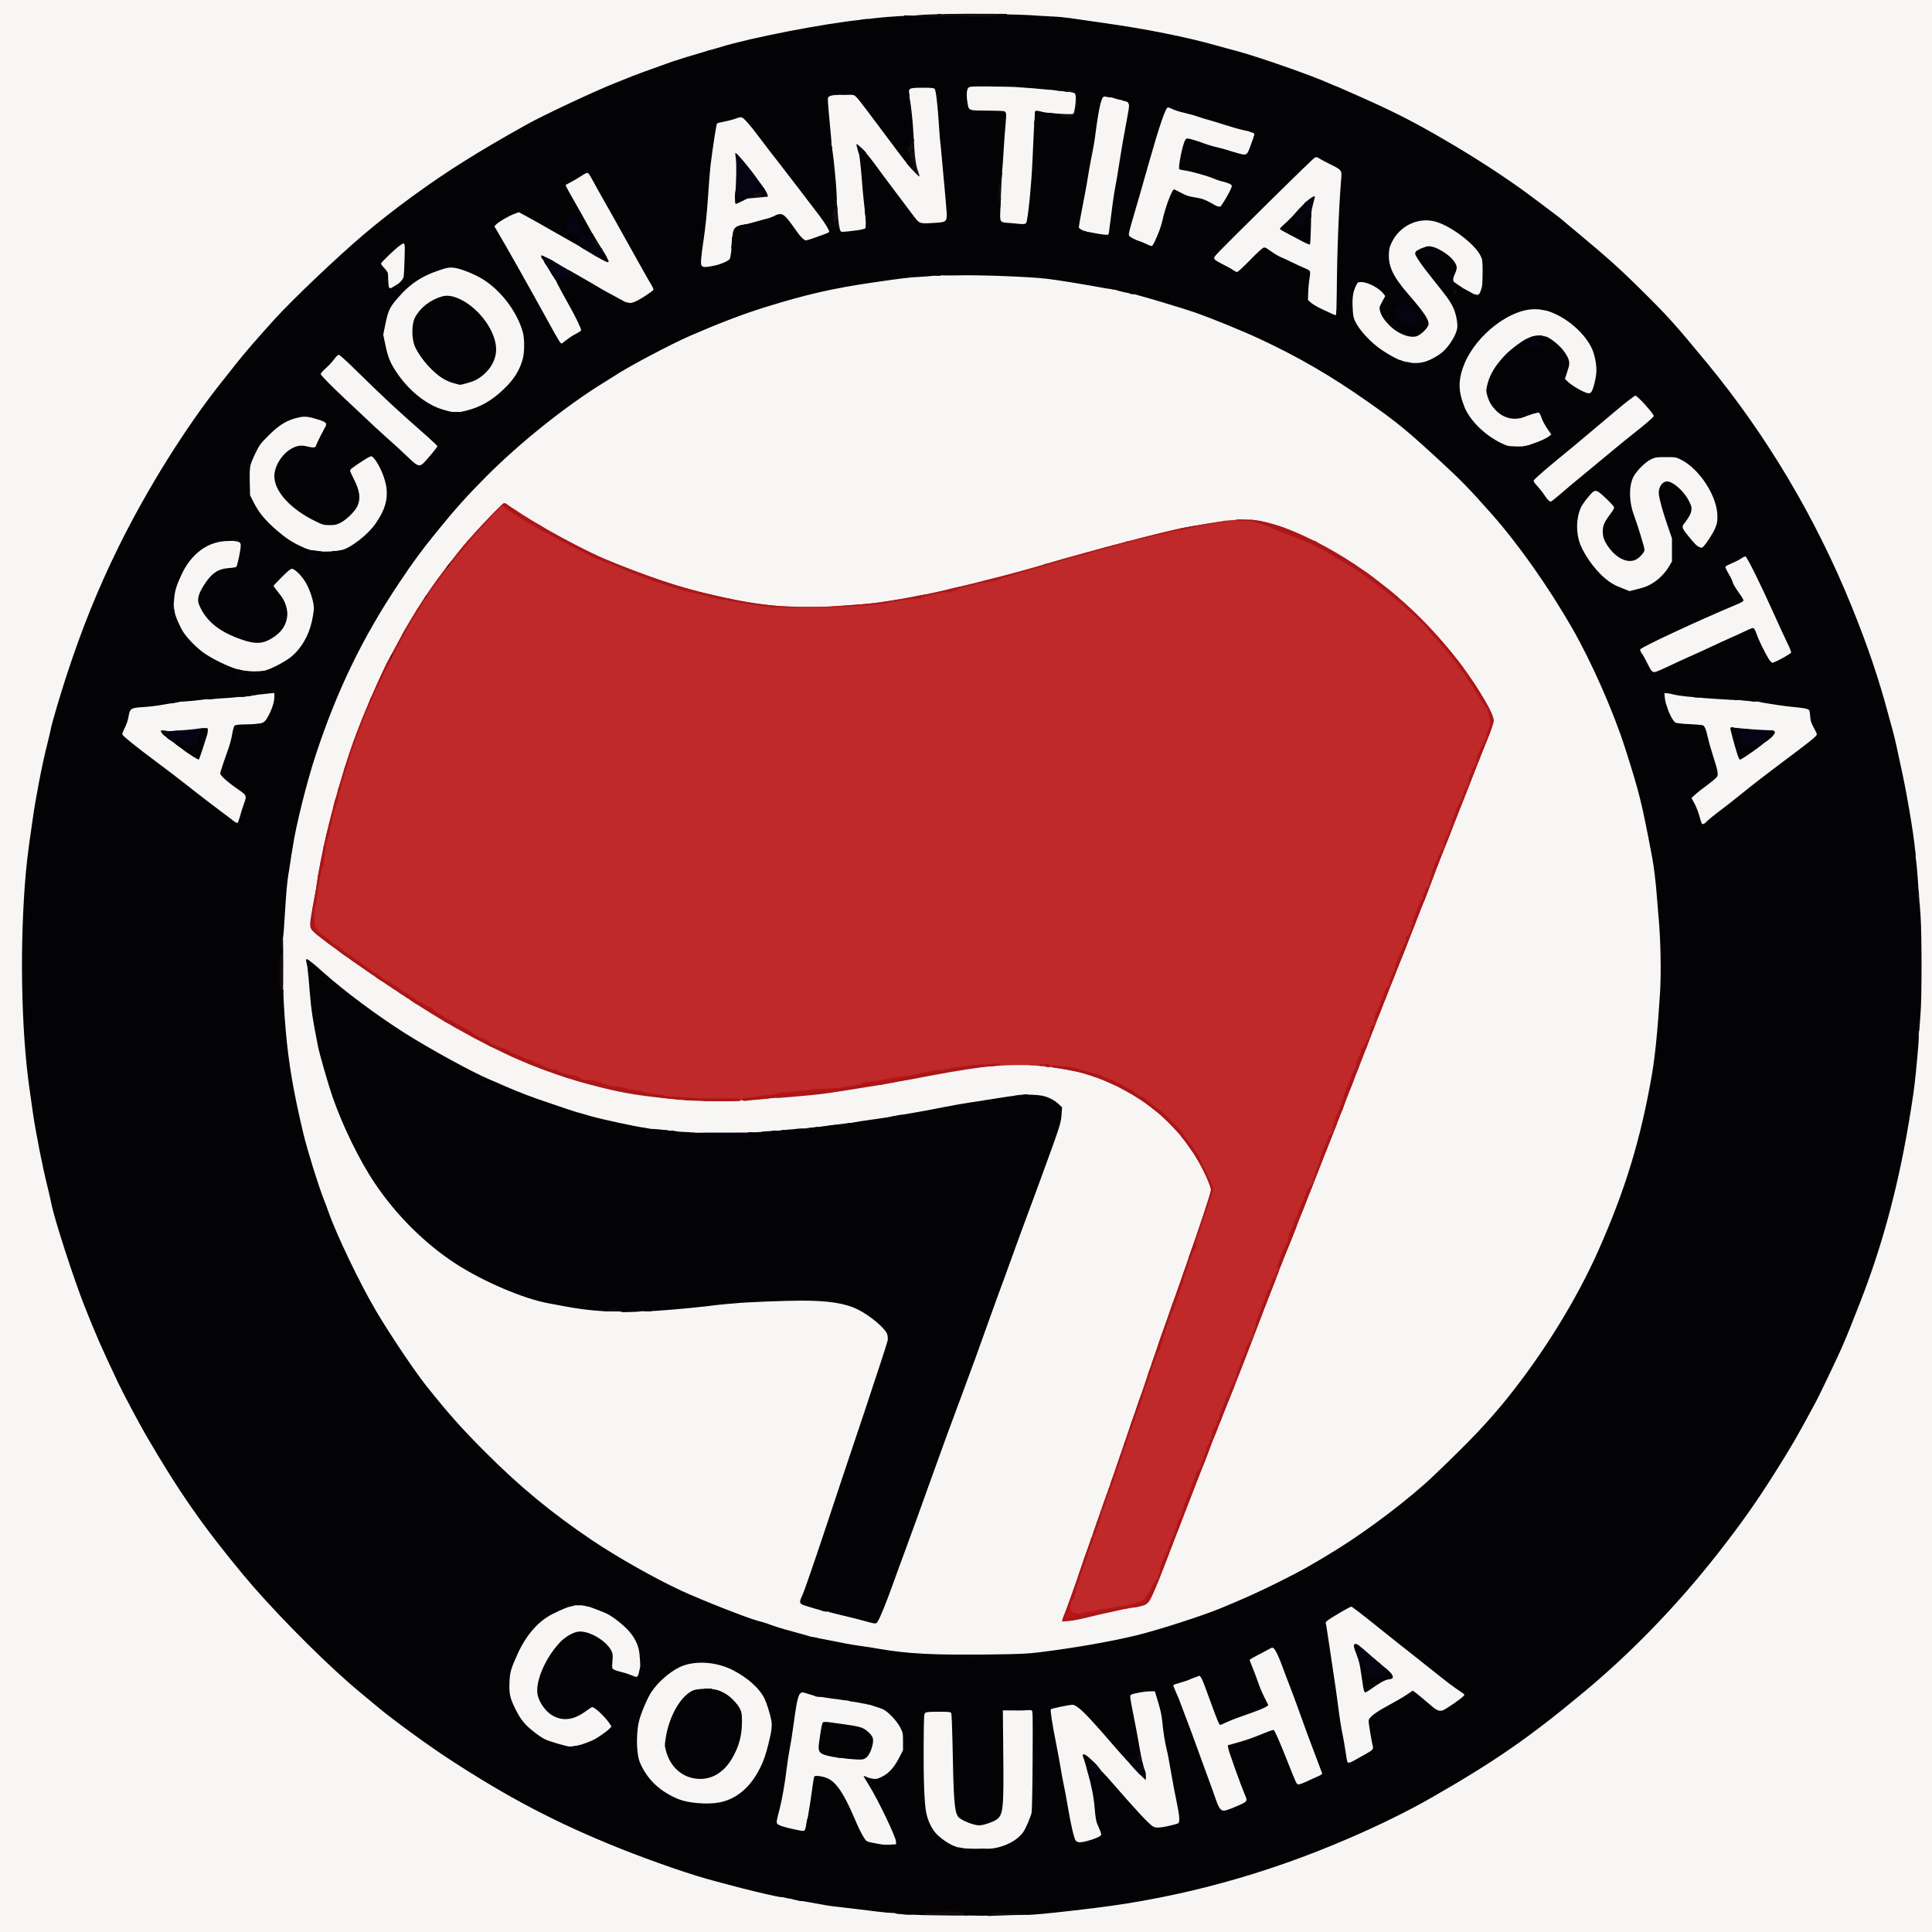 Acción antifascista Corunha